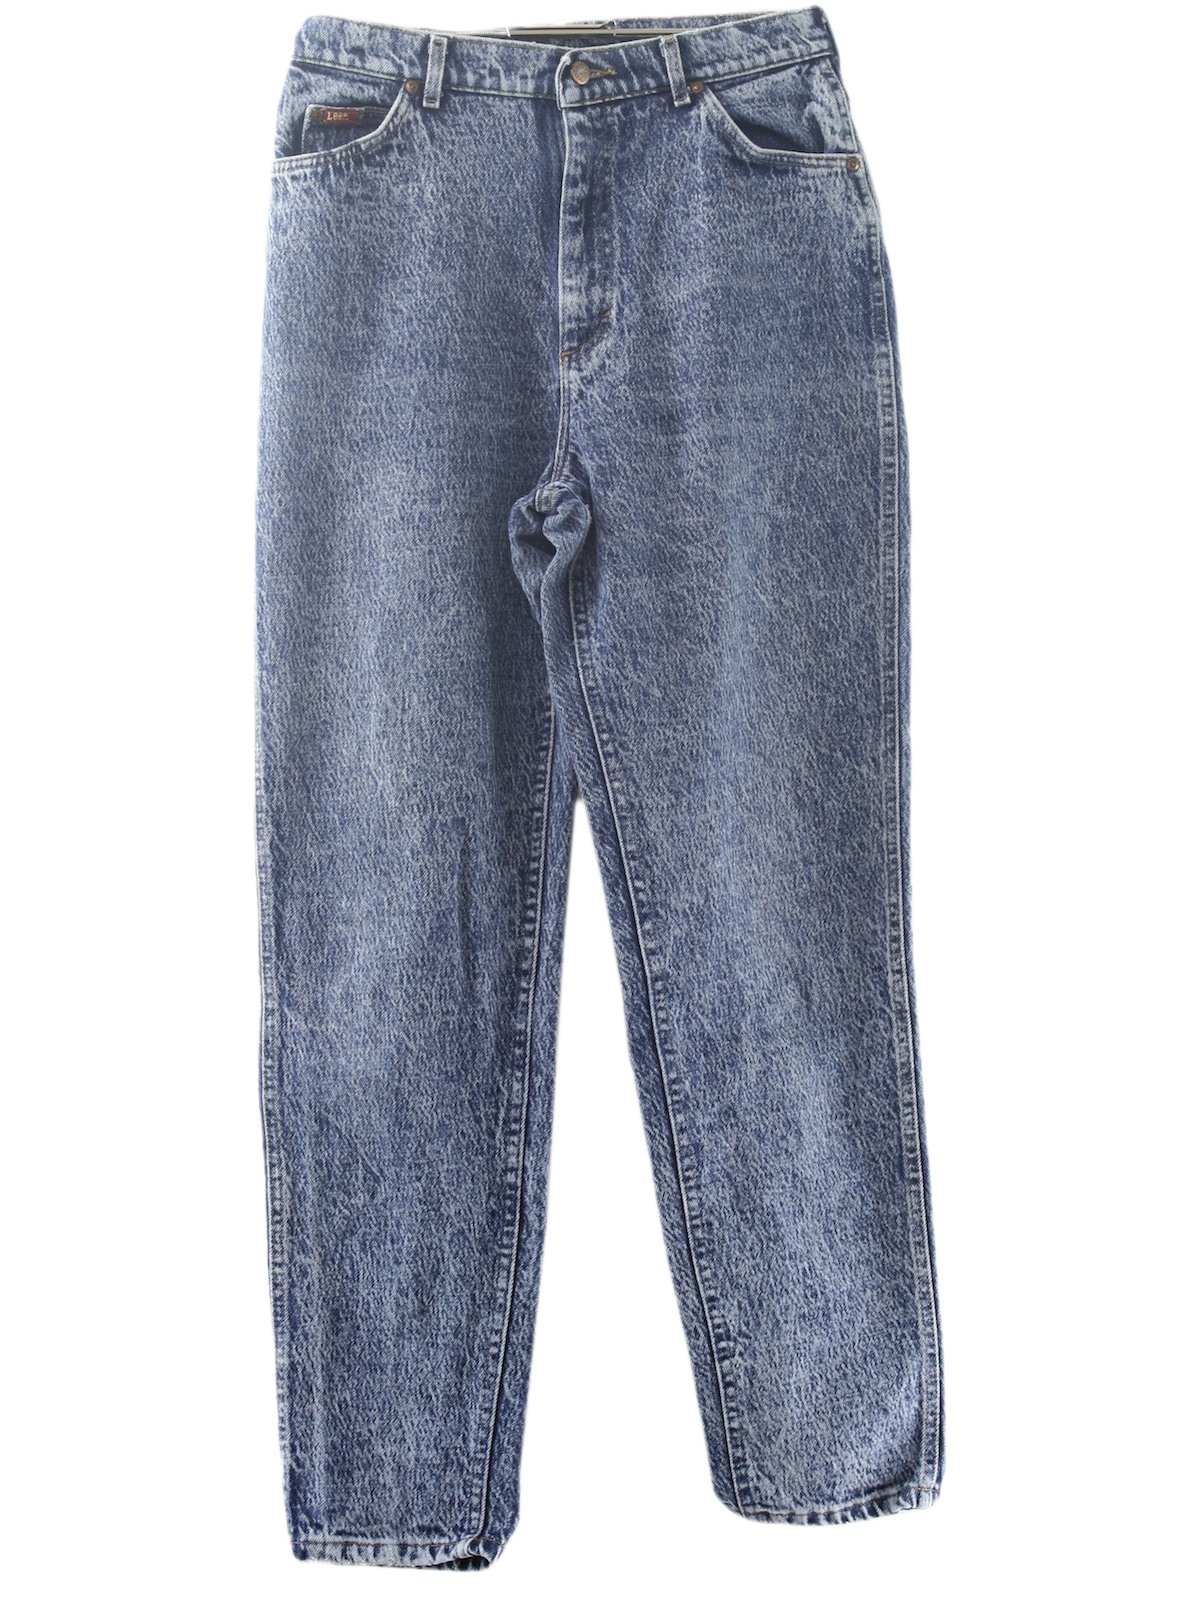 Lee Eighties Vintage Pants: 80s -Lee- Womens dark blue stone washed ...